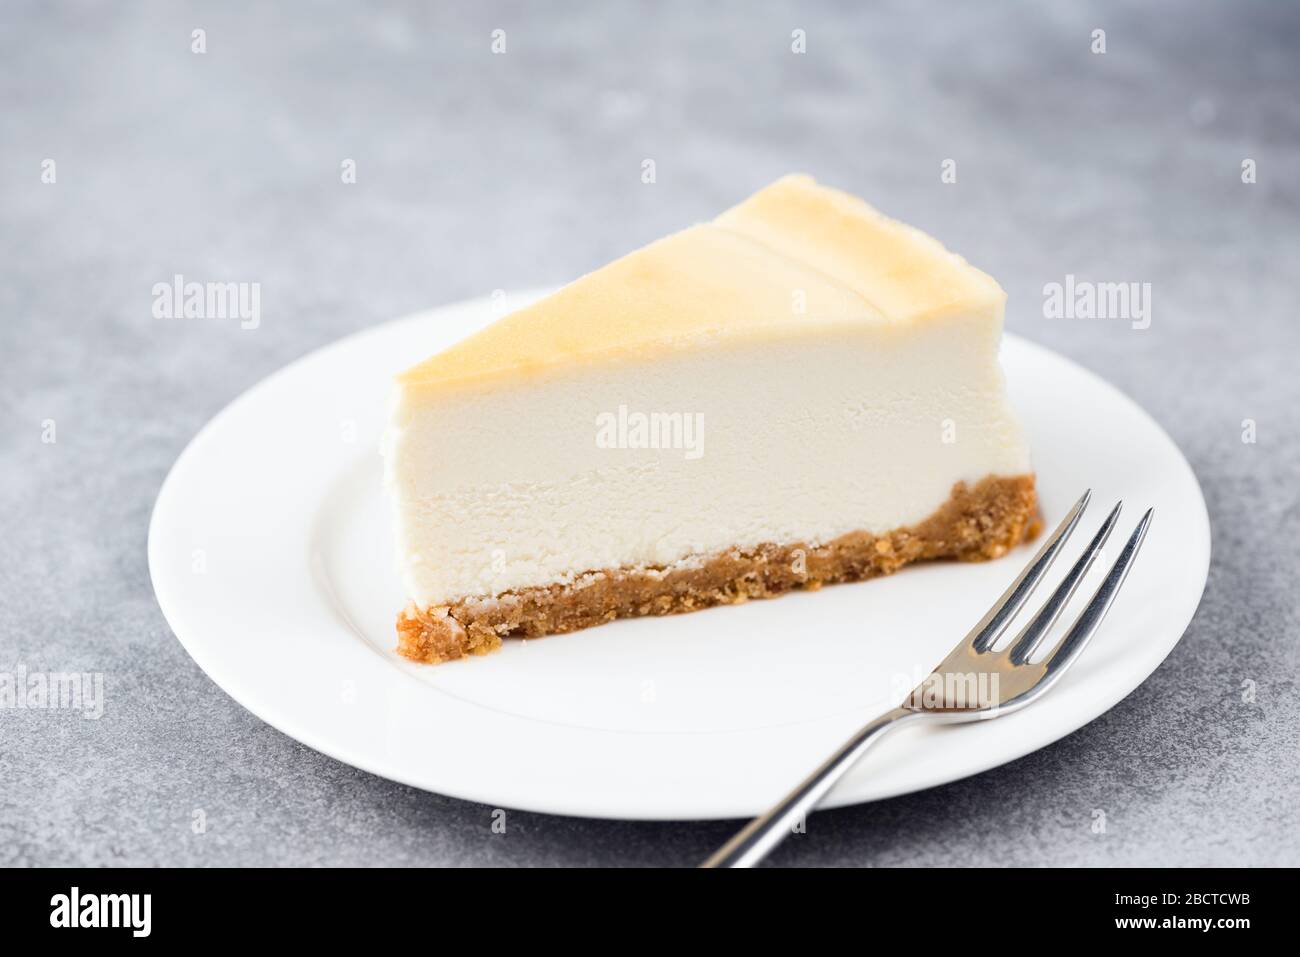 Una rebanada de tarta de queso en un plato blanco. Pastel de postre hecho con queso crema. Aislado sobre fondo de hormigón gris Foto de stock